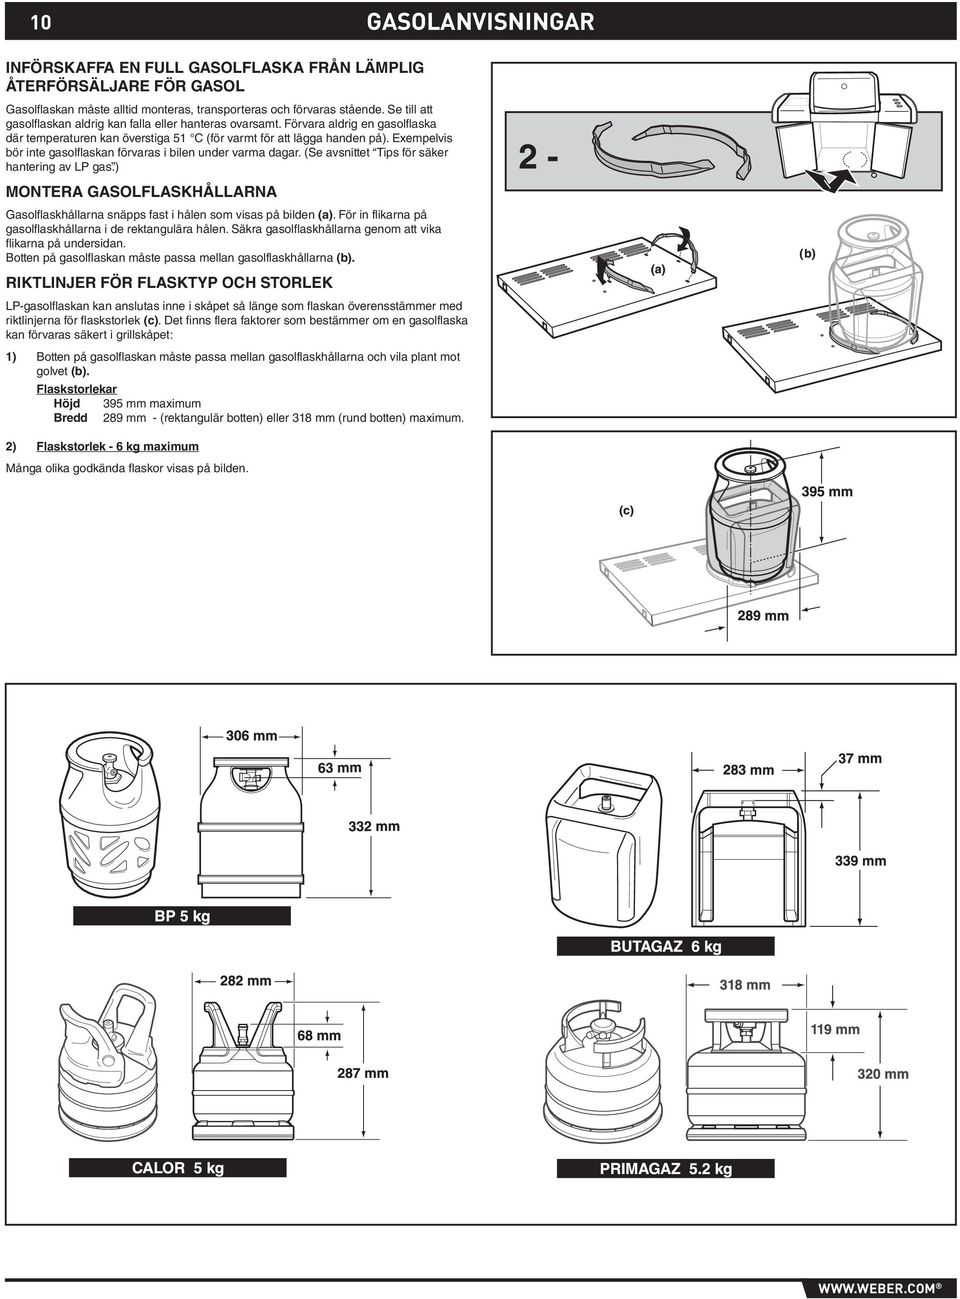 Exempelvis bör inte gasolflaskan förvaras i bilen under varma dagar. (Se avsnittet Tips för säker hantering av LP gas.